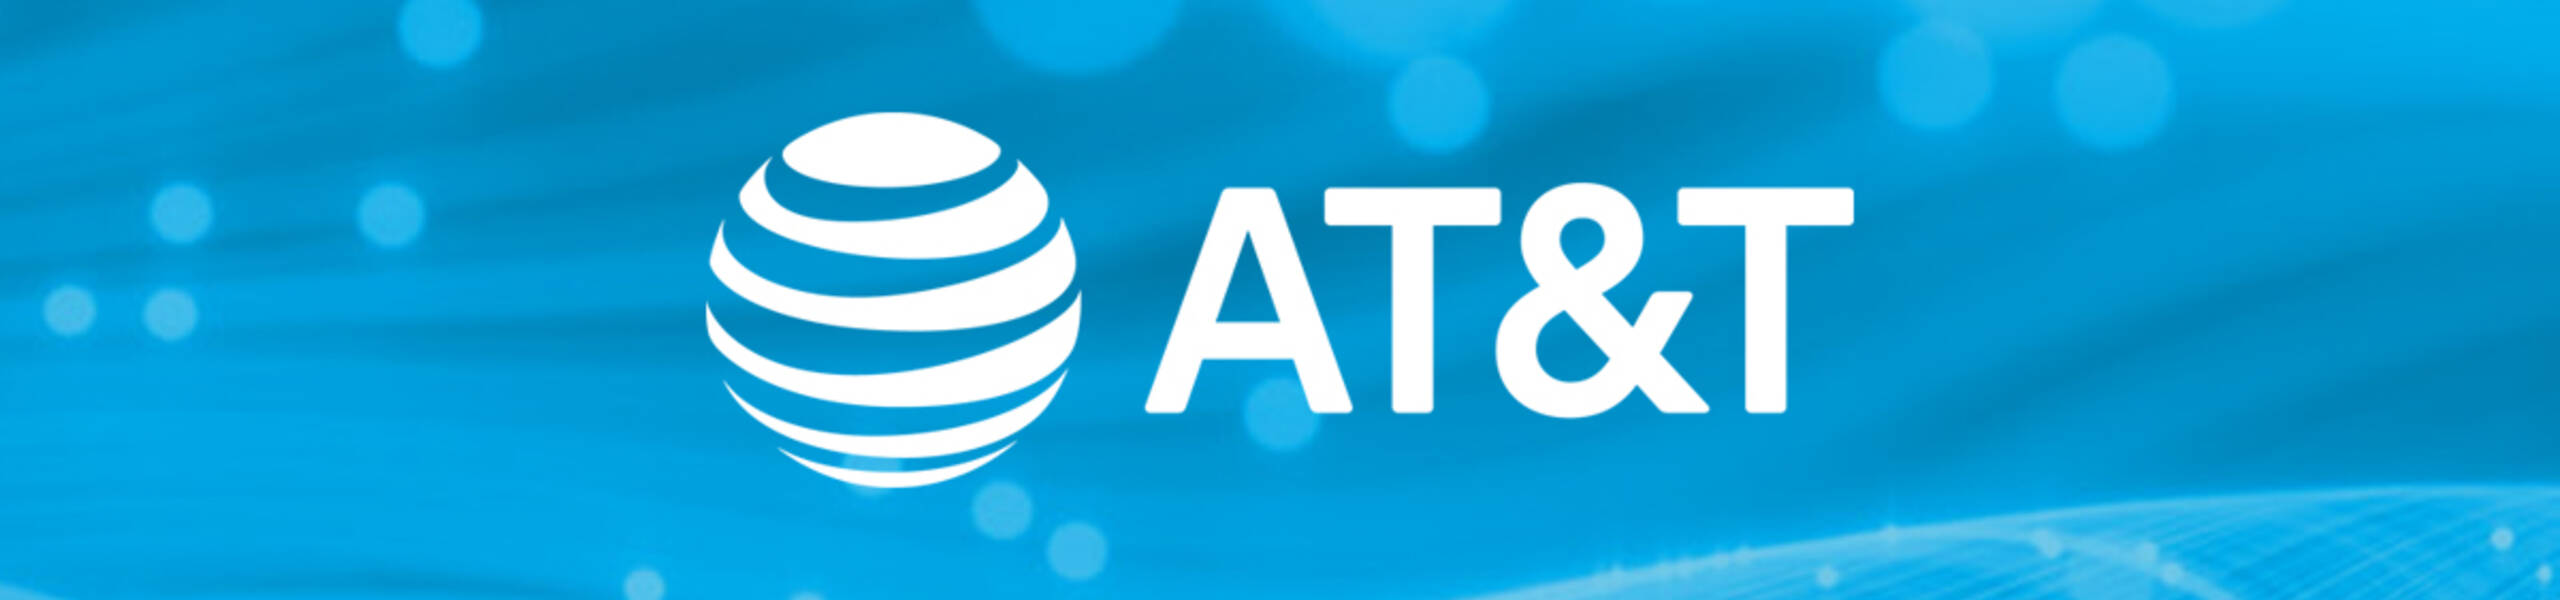 AT&T CEO กล่าวว่าการลดเงินปันผลสะท้อนให้เห็นถึงการเปลี่ยนแปลง